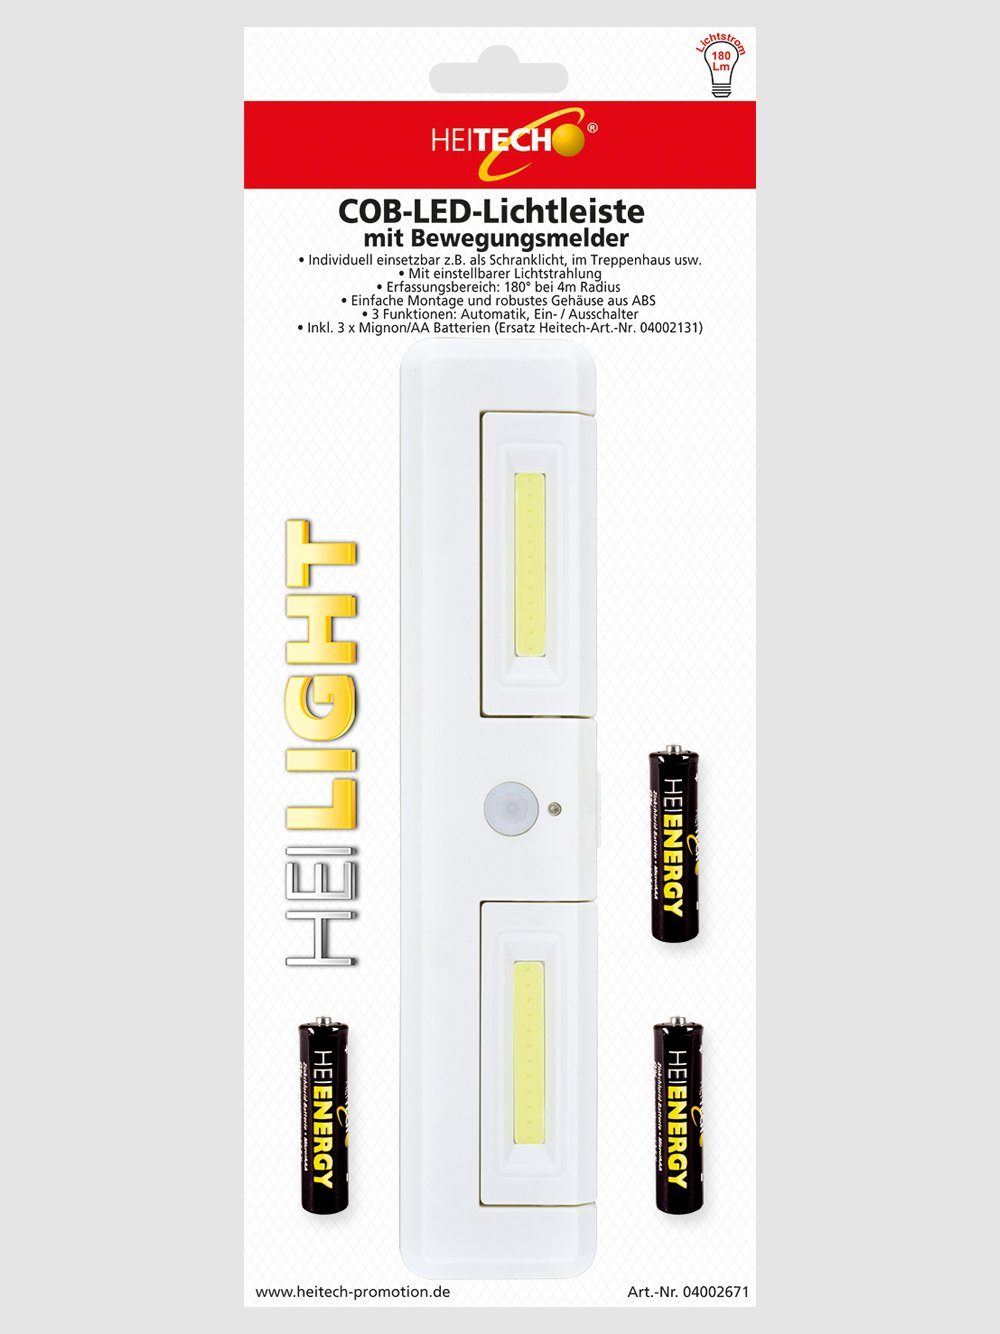 Lichtleiste mit - LED Lichtleiste Wandleuchte Bewegungsmelder innen HEITECH LED COB